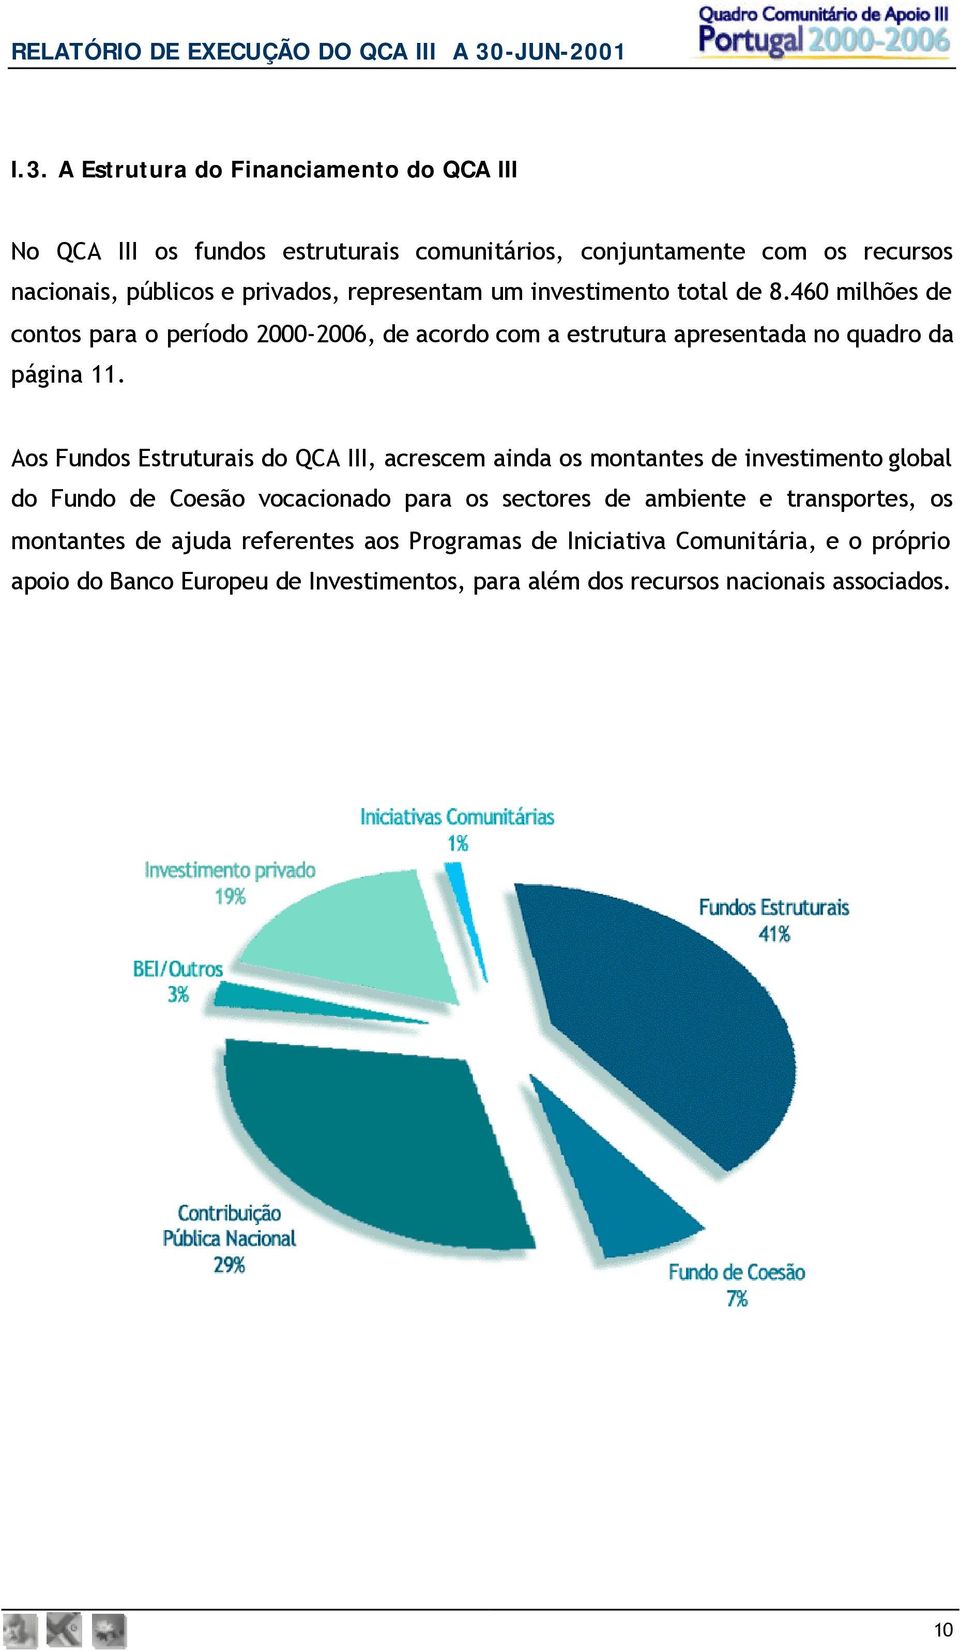 Aos Fundos Estruturais do QCA III, acrescem ainda os montantes de investimento global do Fundo de Coesão vocacionado para os sectores de ambiente e